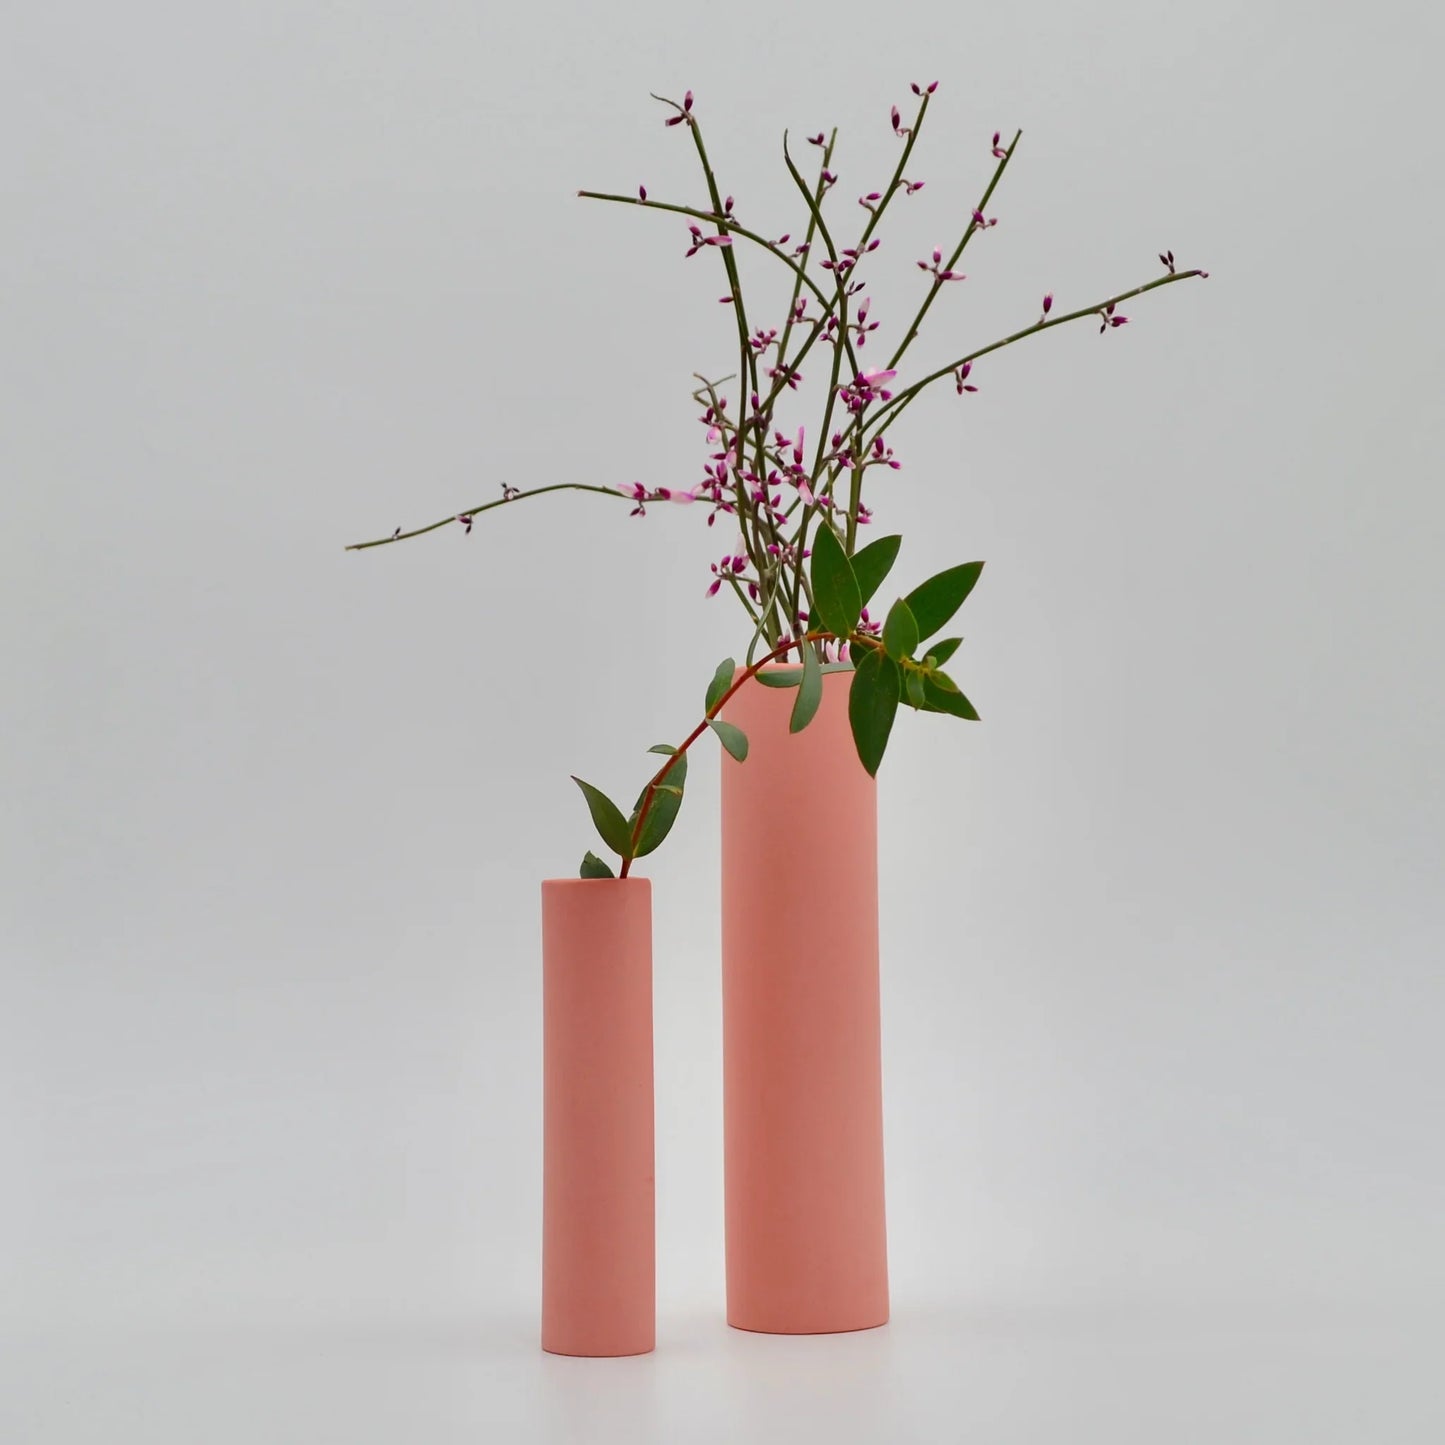 Medium Stem Vase in Pink